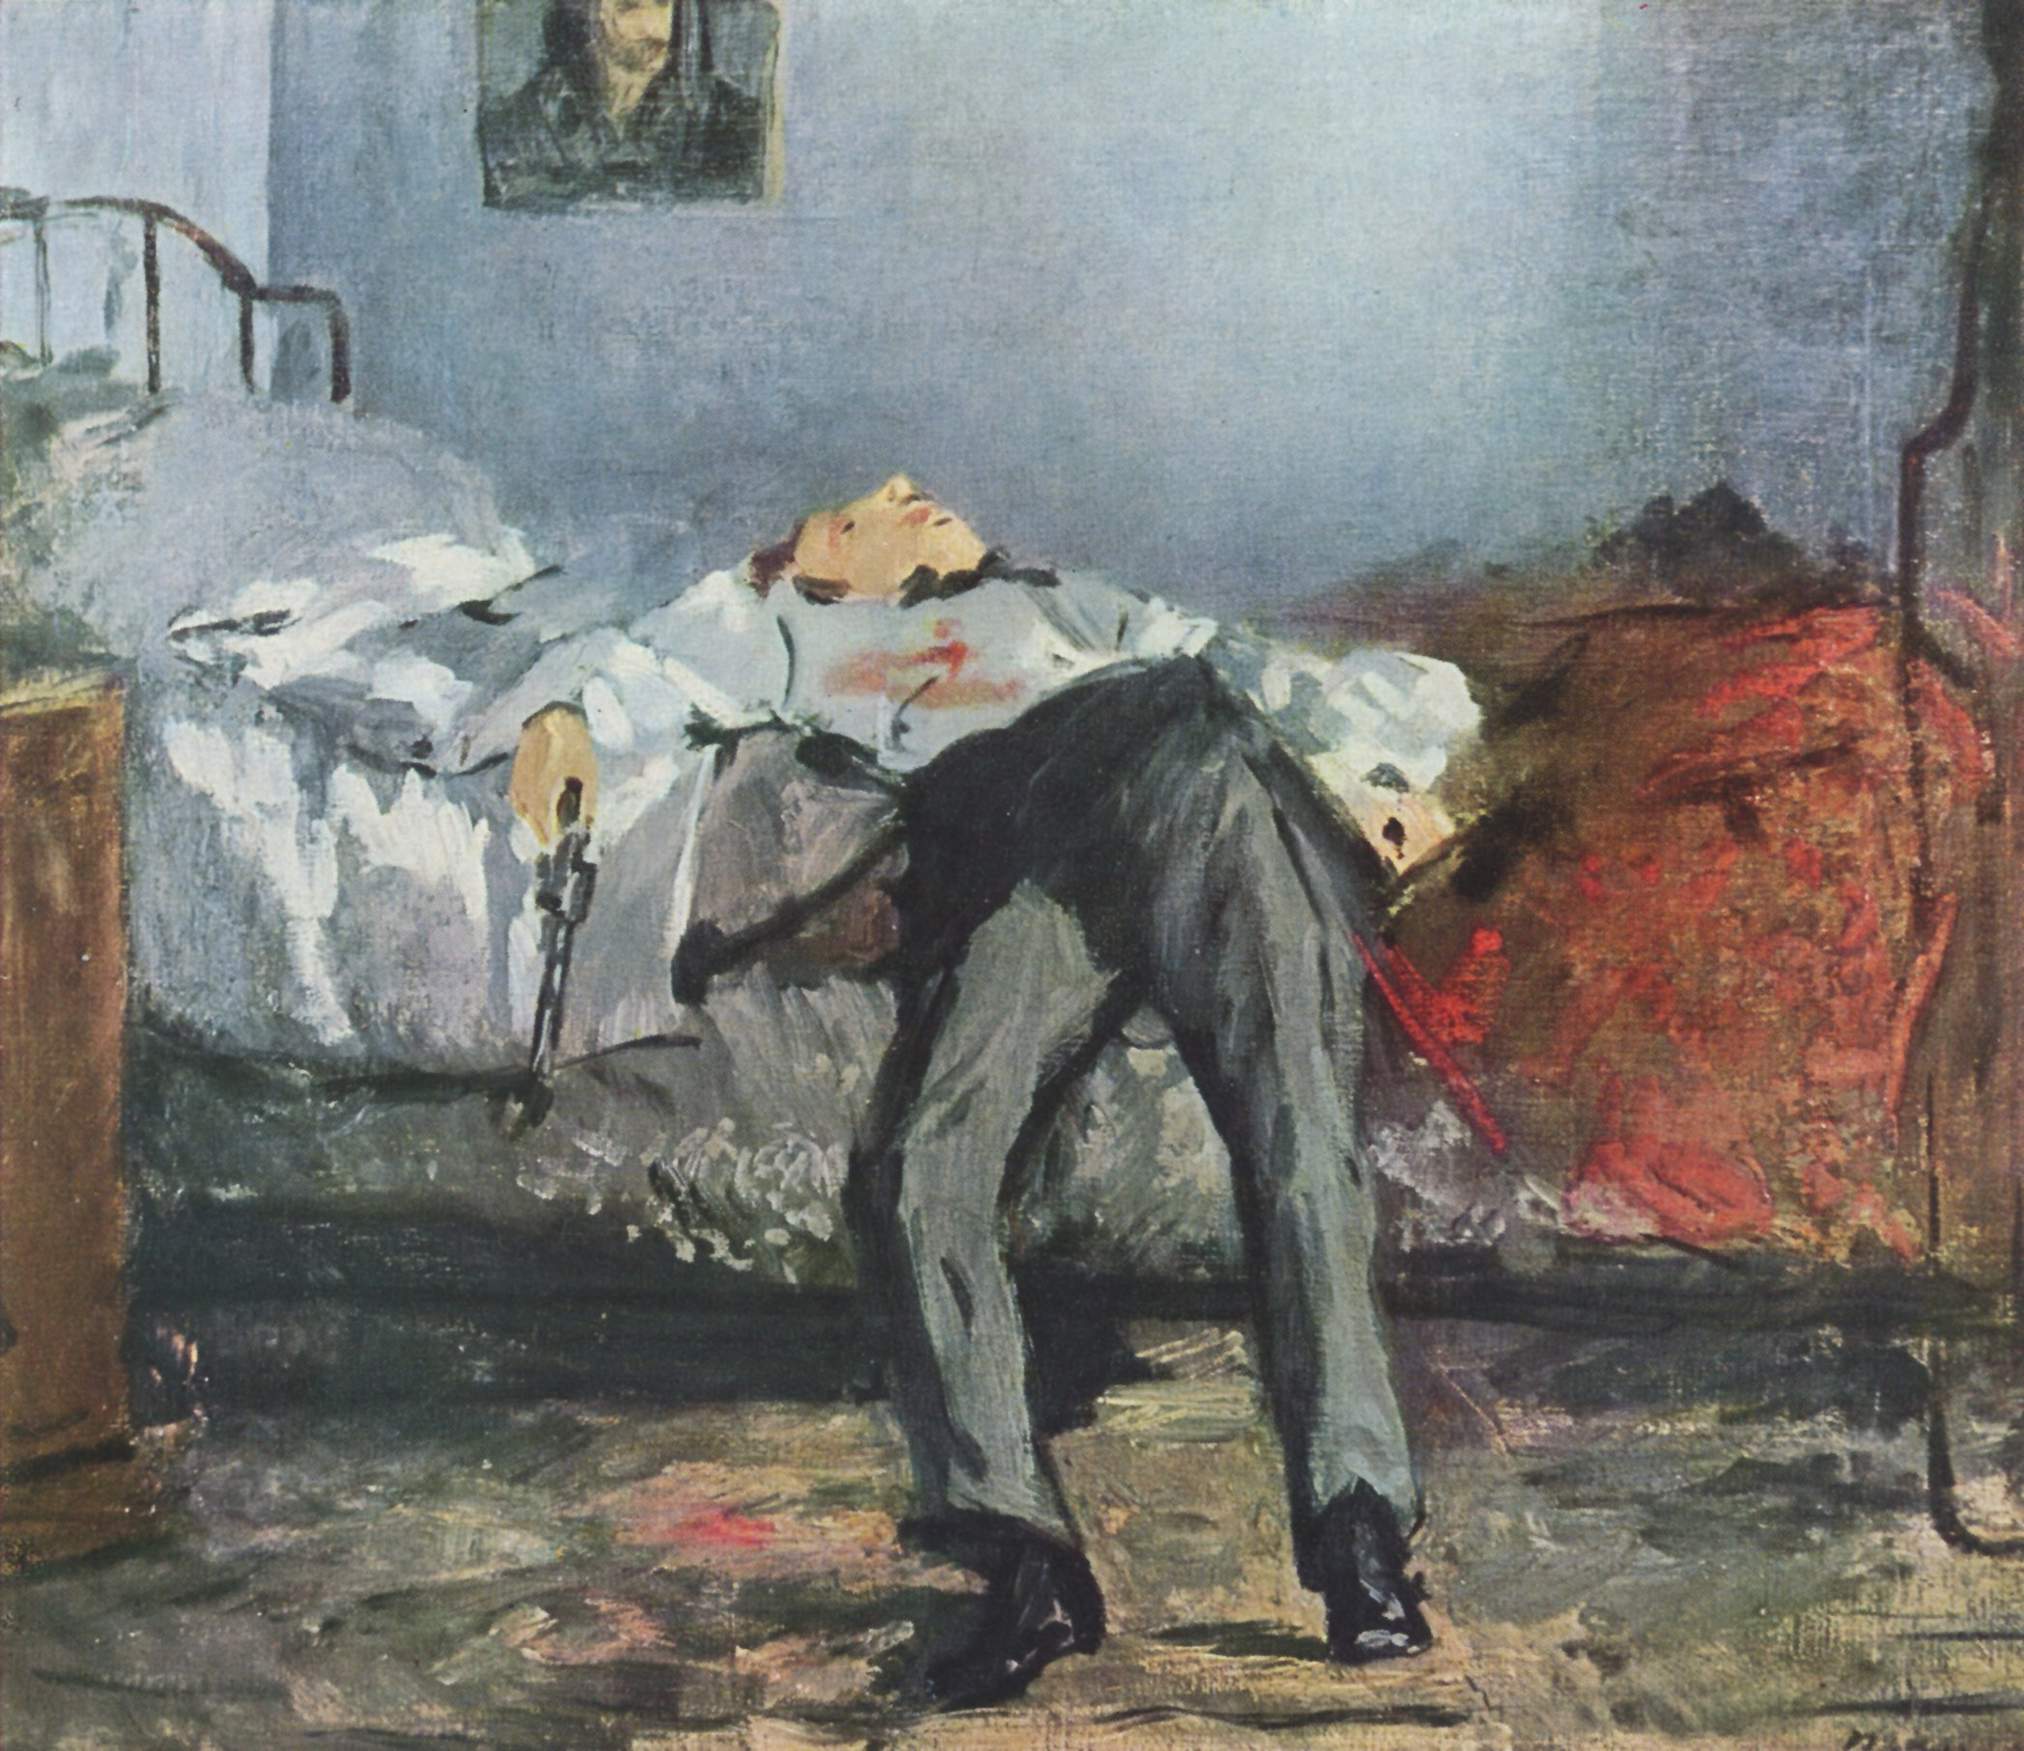 Le Suicidé by Édouard Manet - c. 1877 - 38 cm × 46 cm Foundation E.G. Bührle